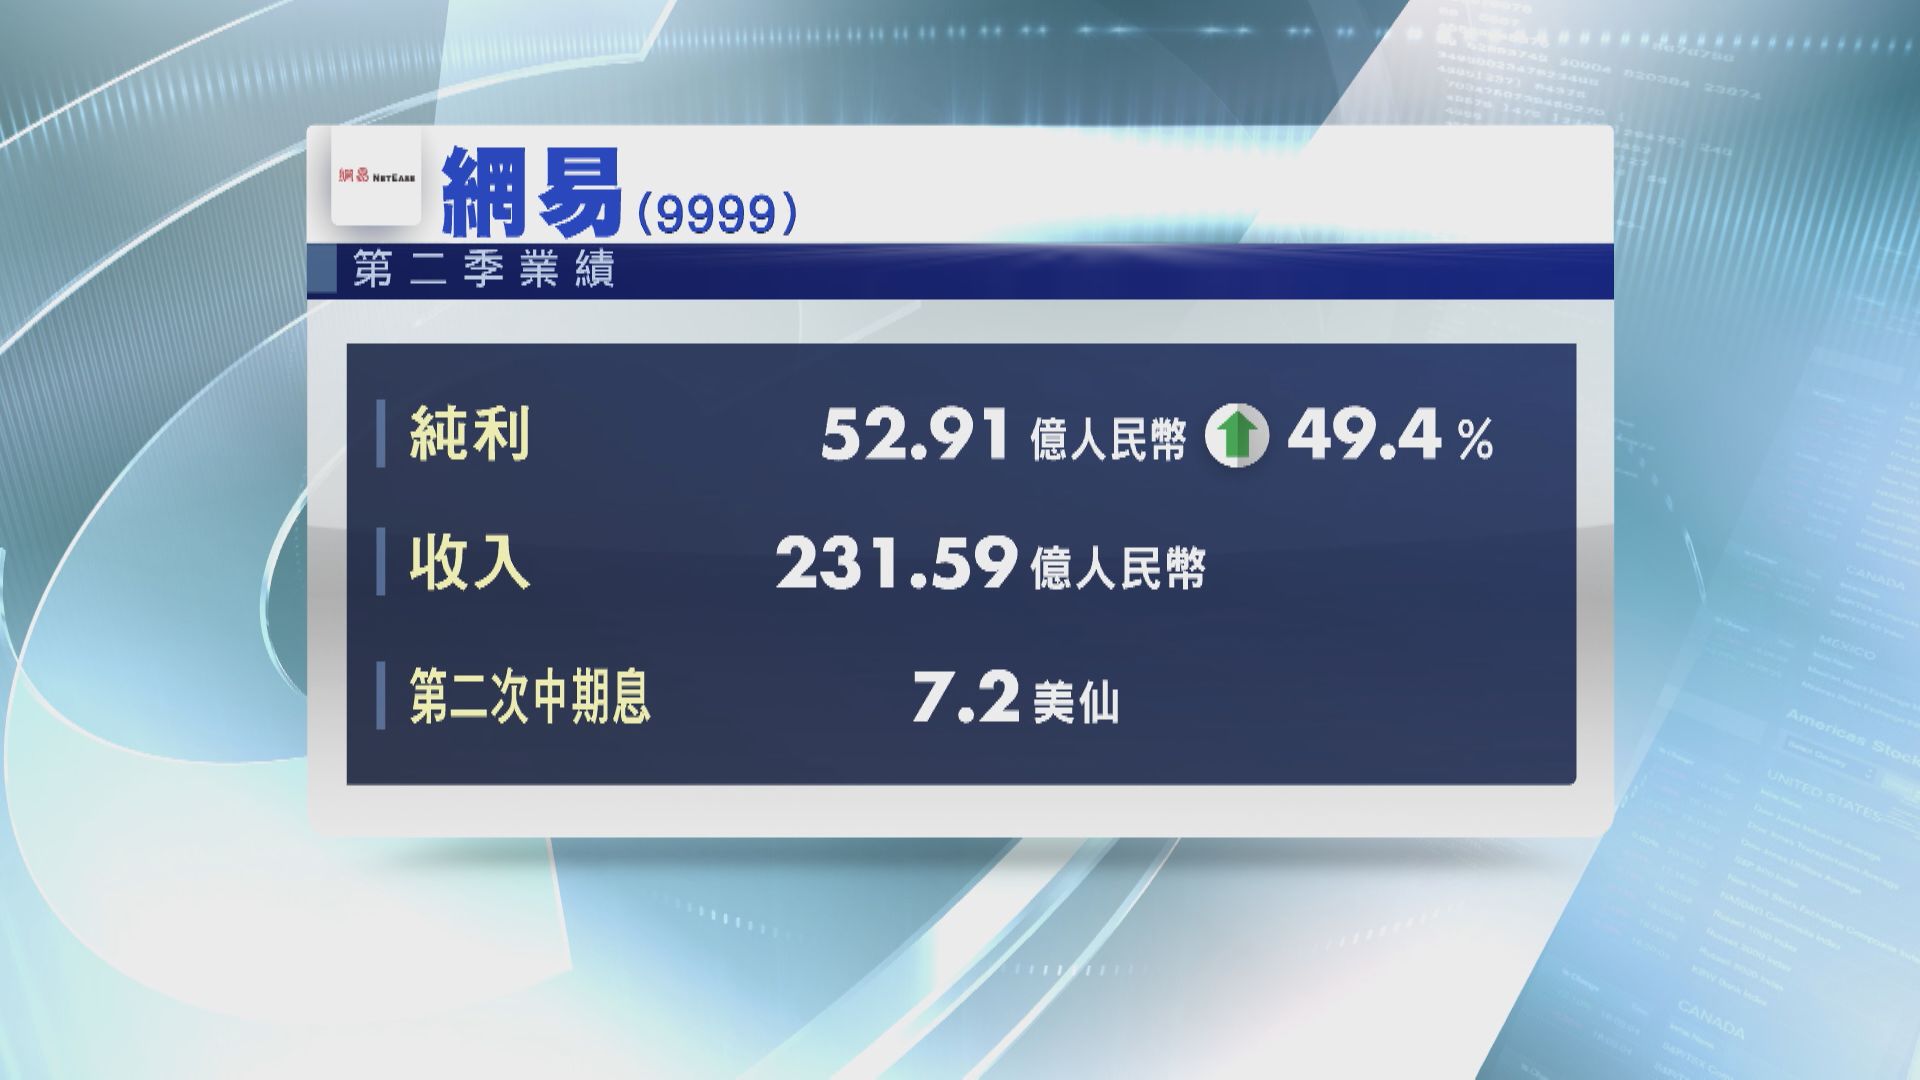 【業績速報】網易上季多賺49% 派7.2美仙